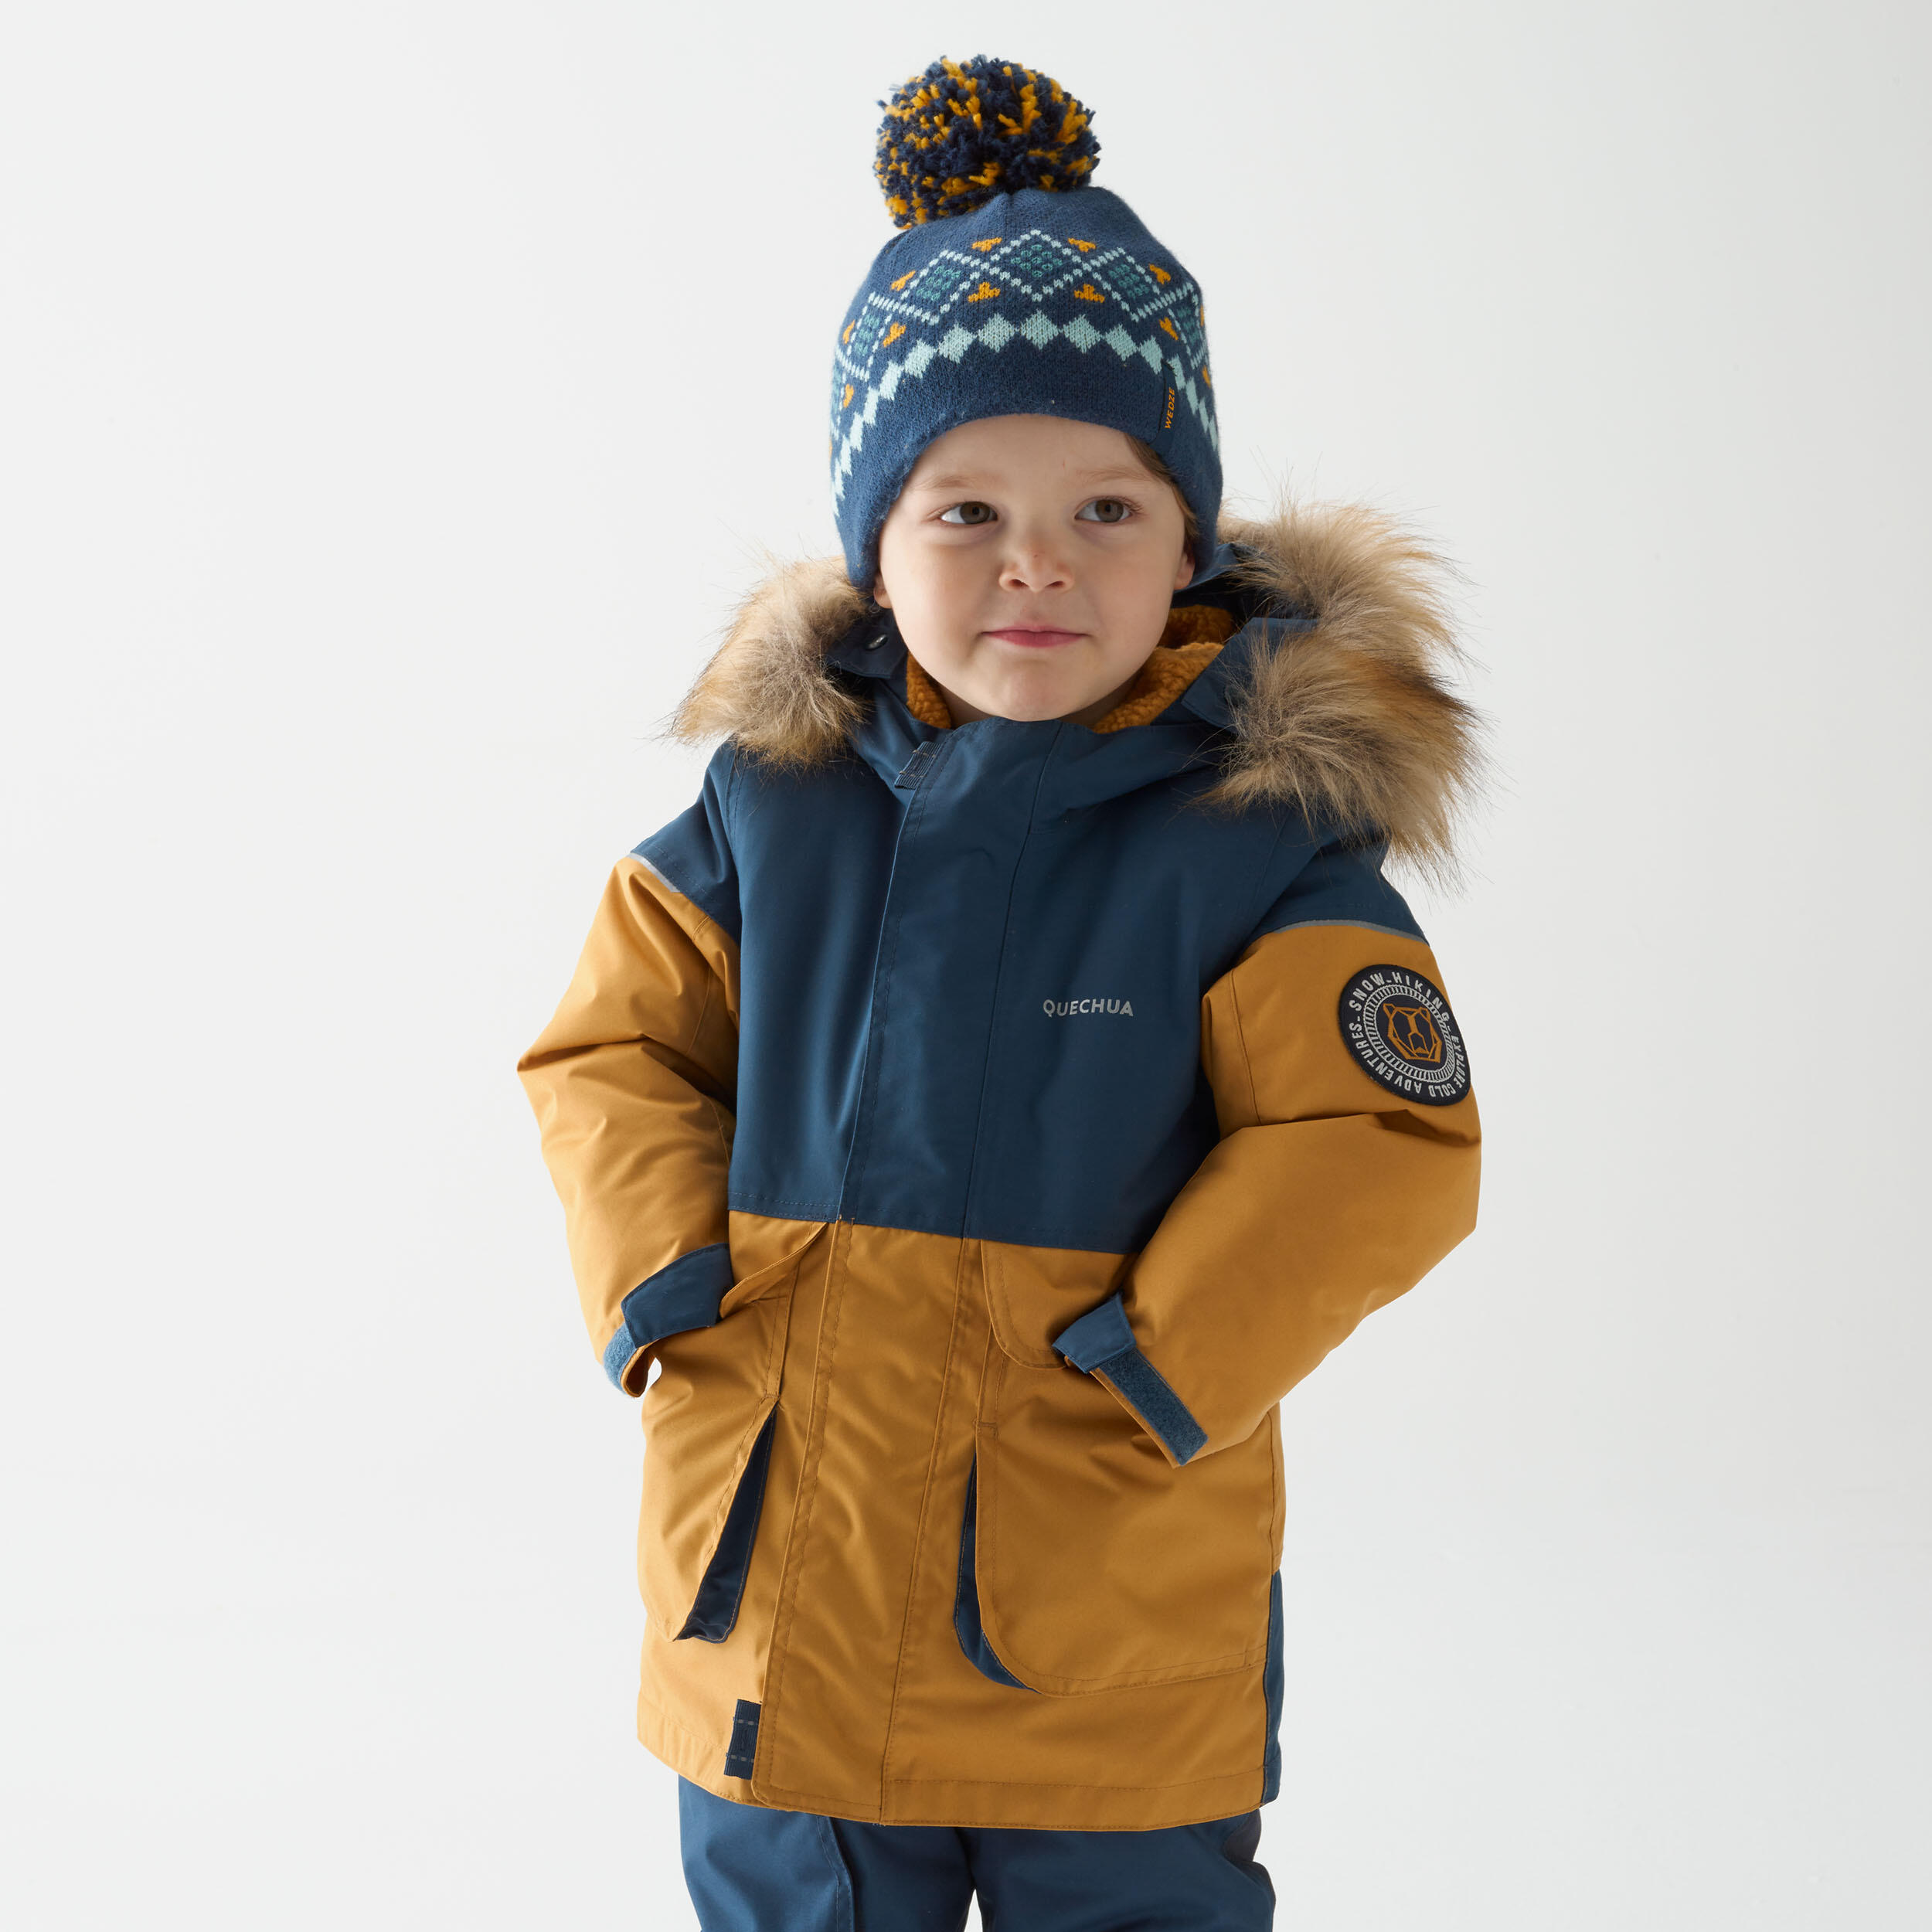 Manteau d'hiver enfant - SH 500 brun